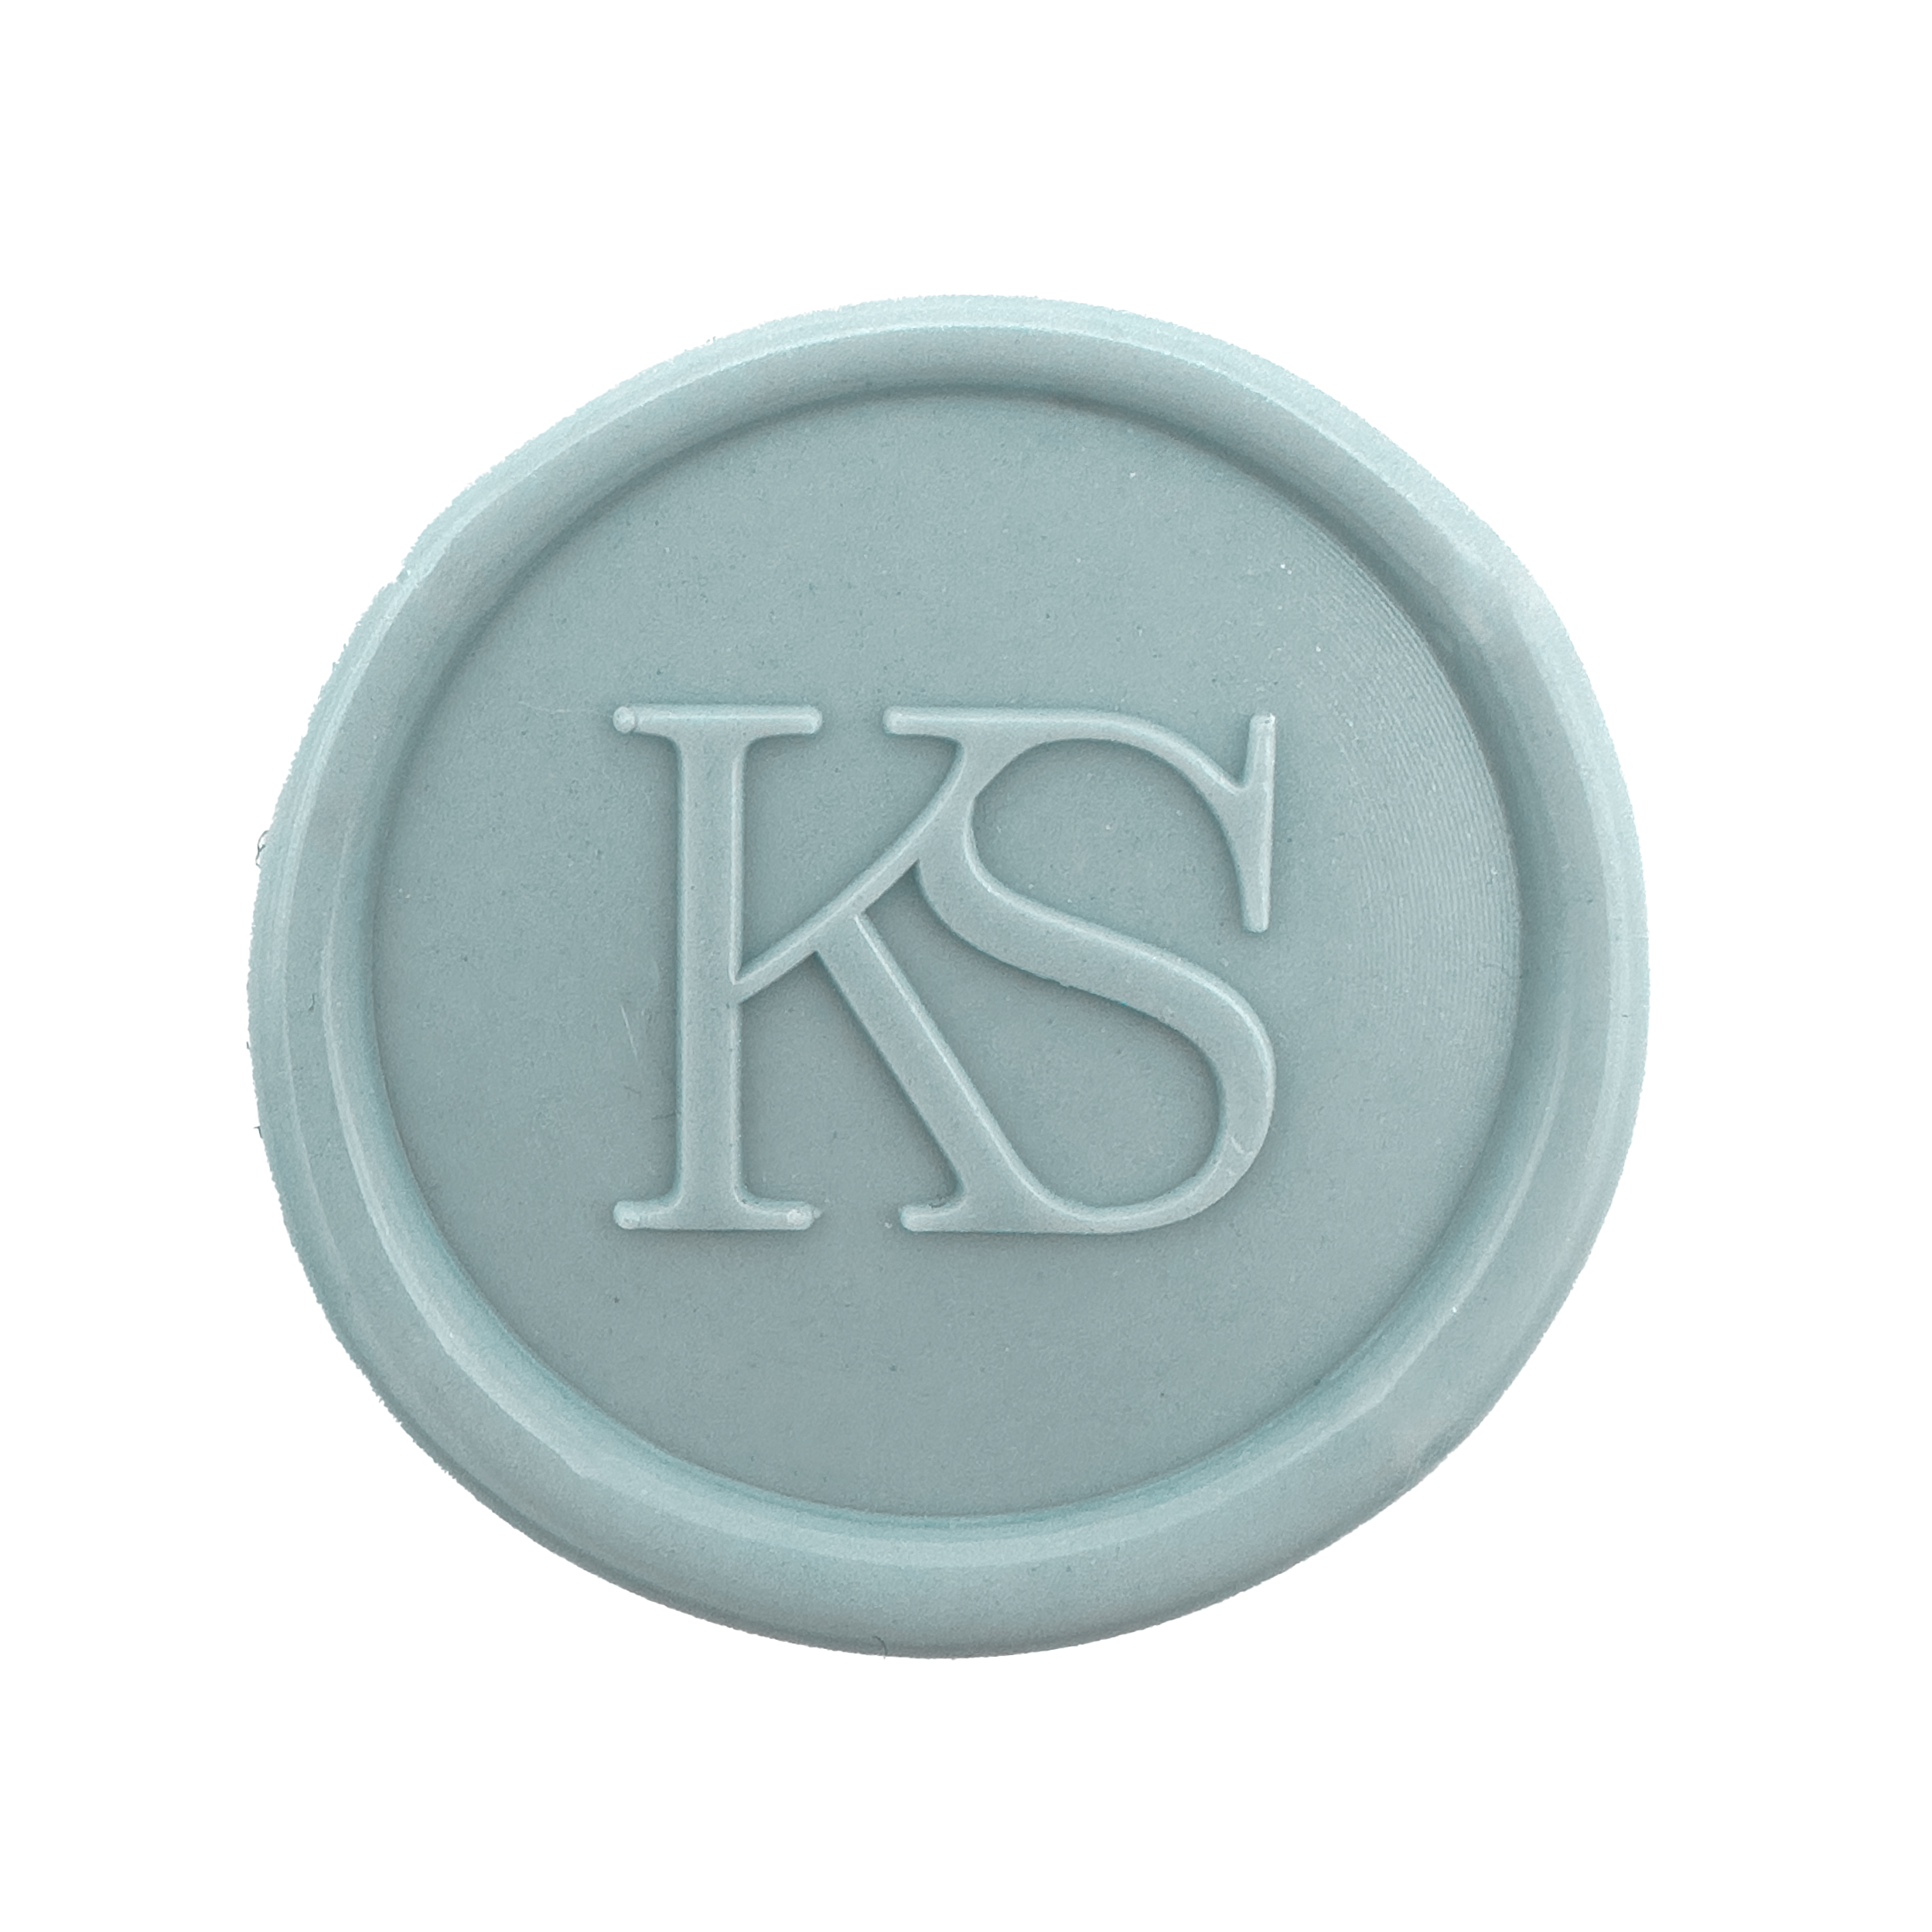 Siegelstempel "Kailey" - Wachssiegel Stempel mit Personalisierten Initialen